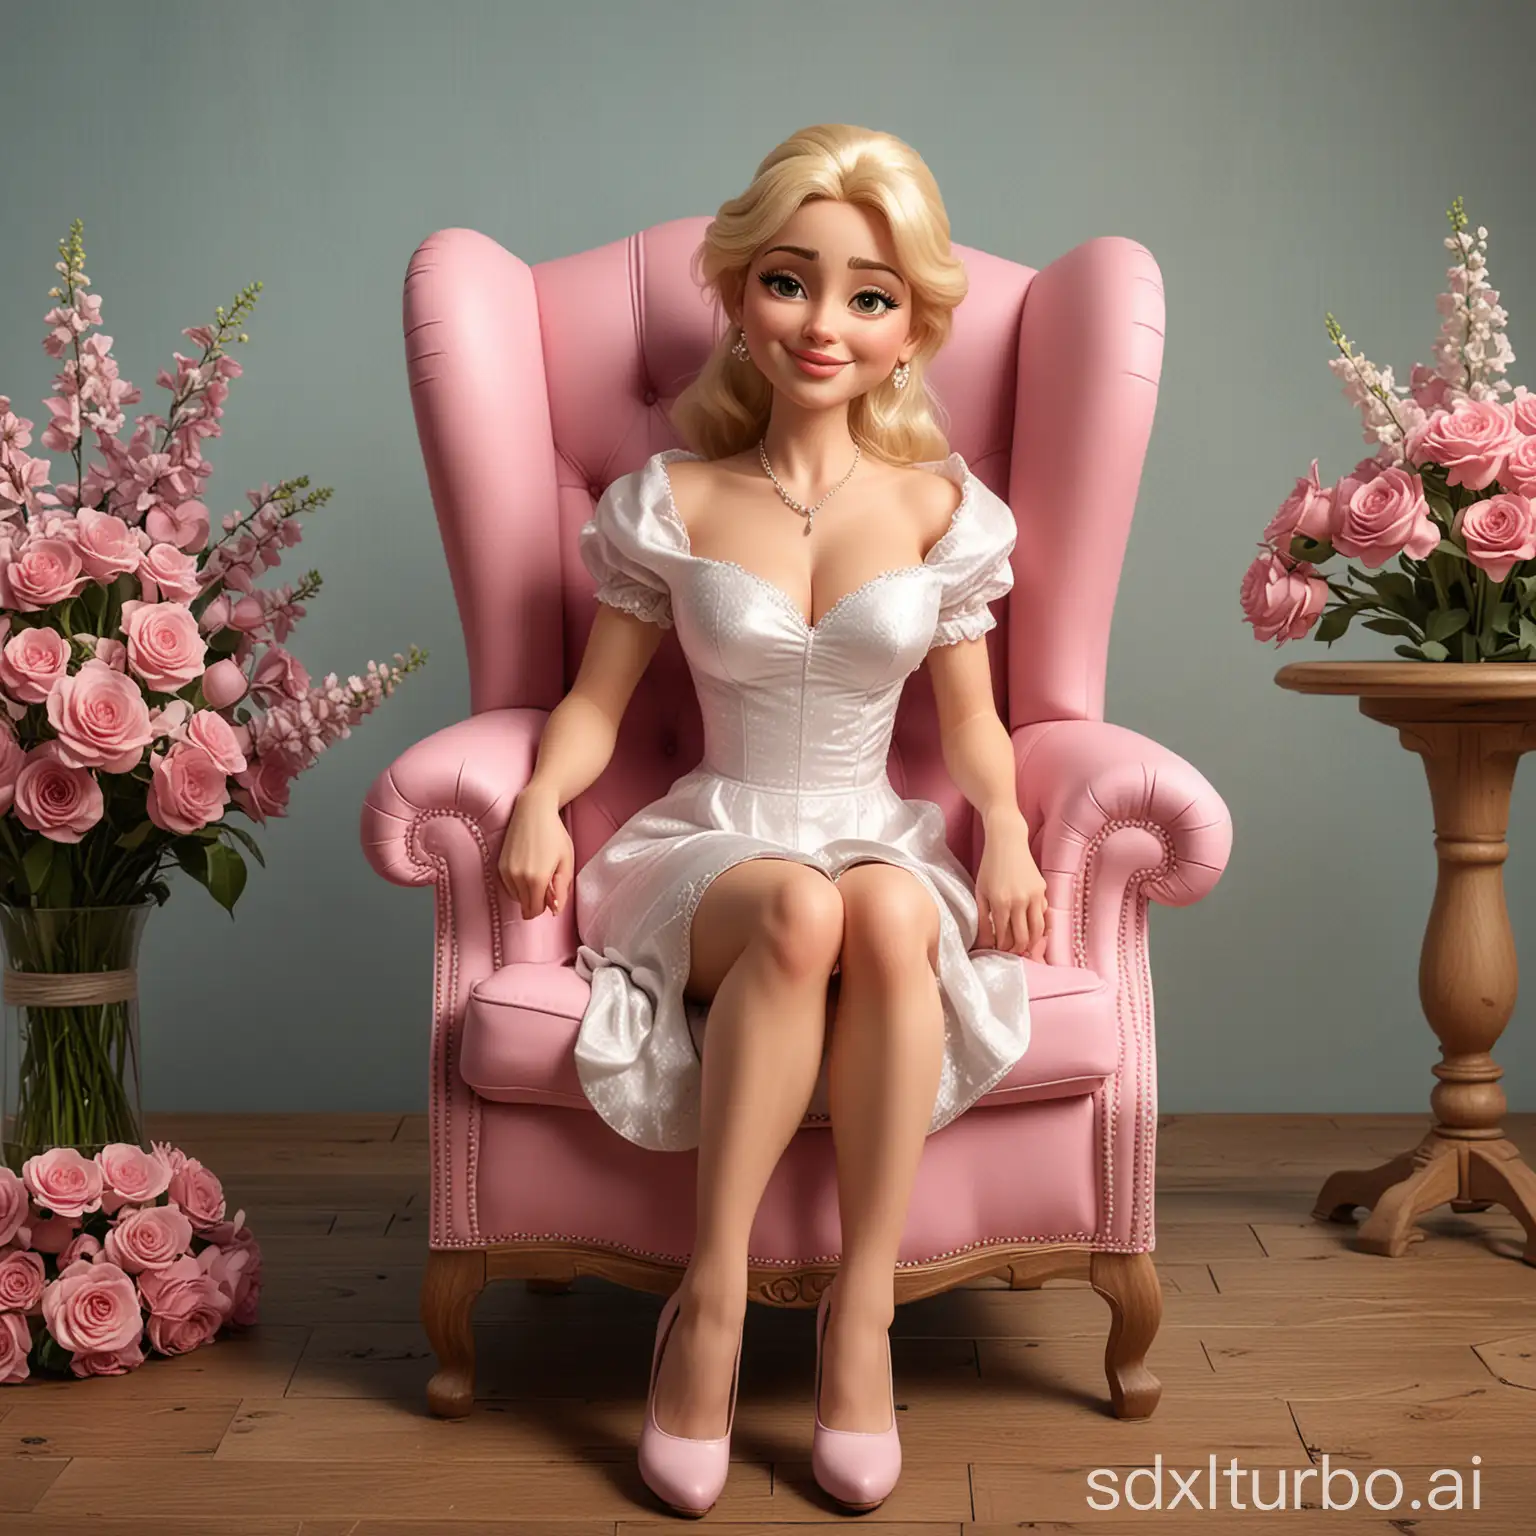 Madonna-Caricature-Portrait-3D-Realistic-Disney-Pixar-Style-with-Bouquet